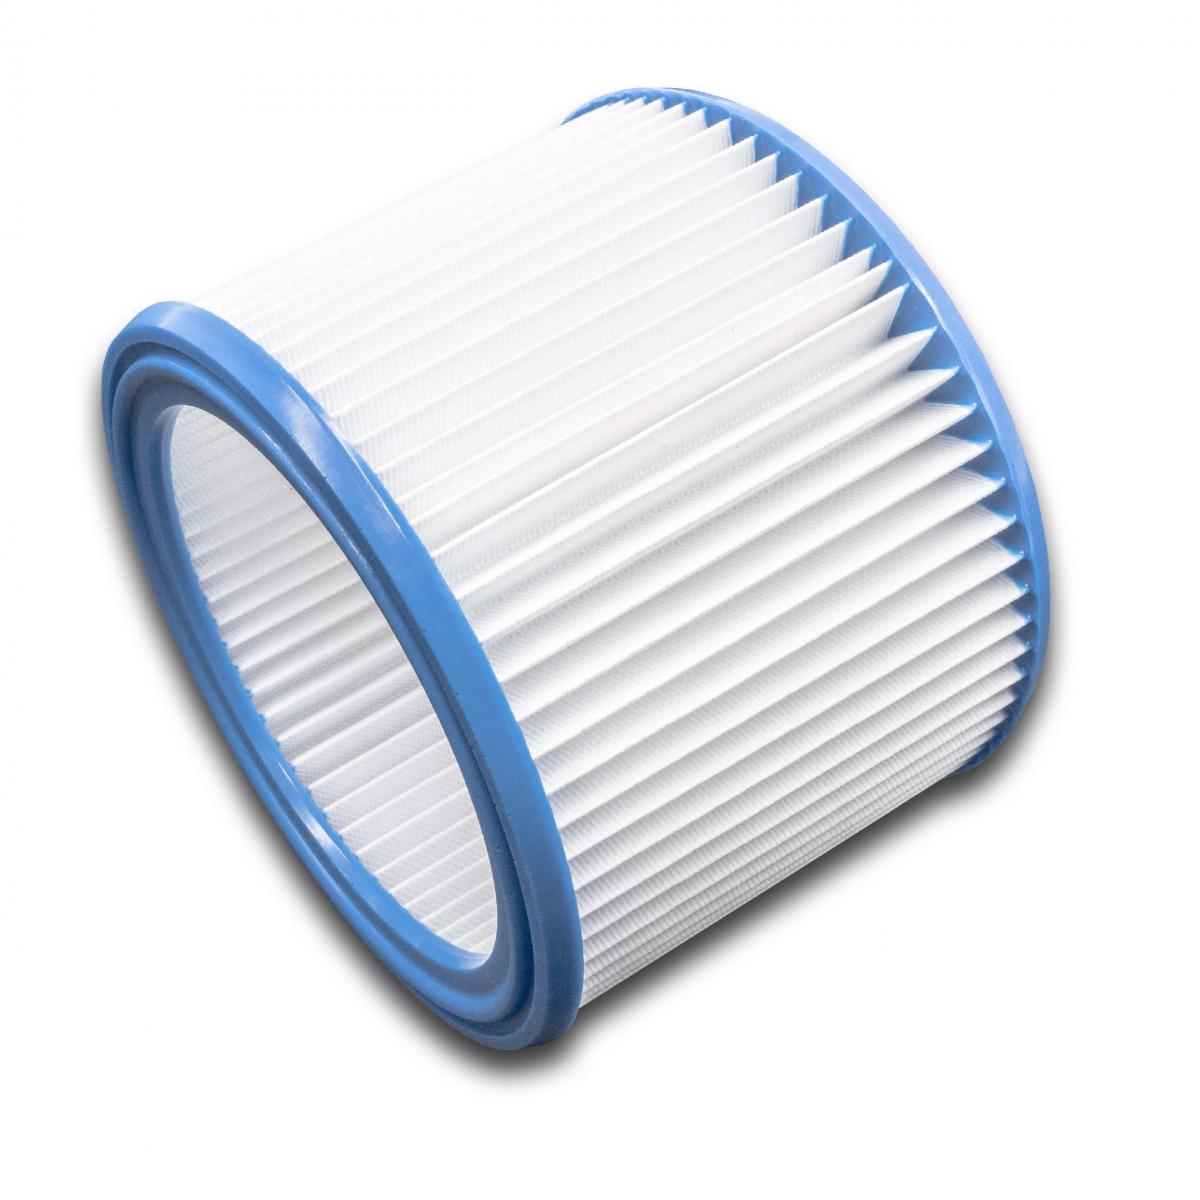 Vhbw - vhbw filtre rond à plis pour aspirateur multifonction, compatible avec Protool VCP 260 EH, VCP 250 E - Cordons d'alimentation